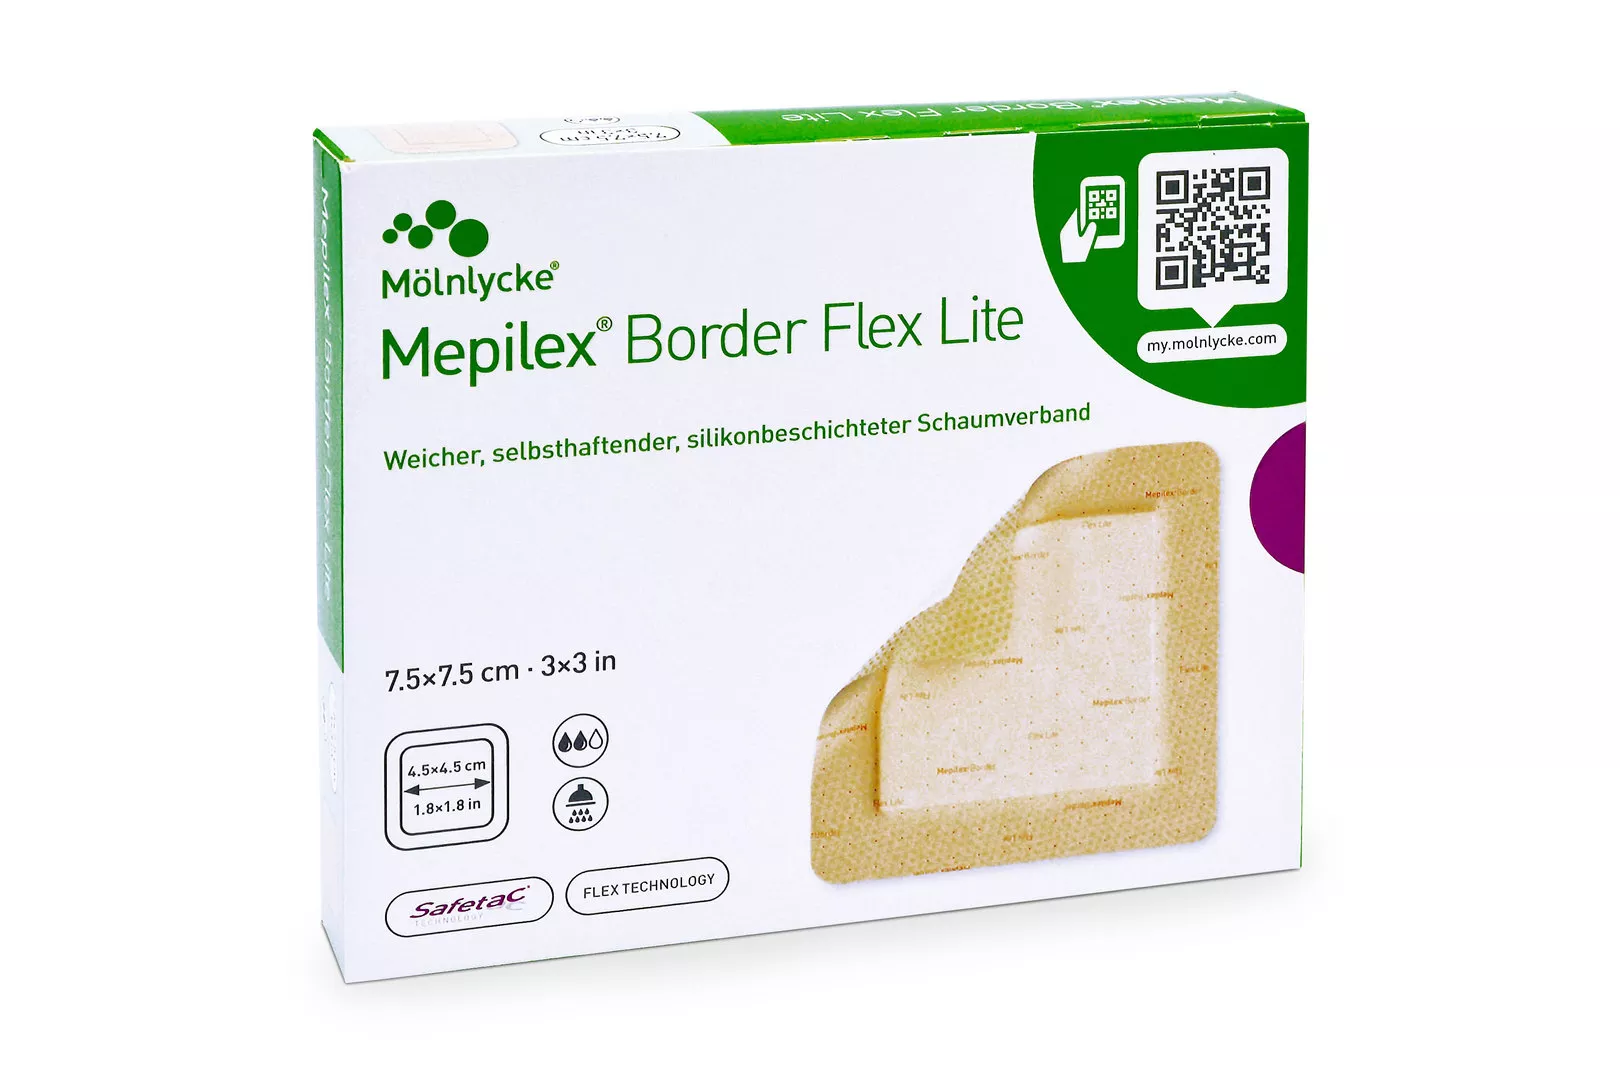 MEPILEX Border Flex Lite Schaumverb. 7.5x7.5 cm, steril, 5 Stück kaufen